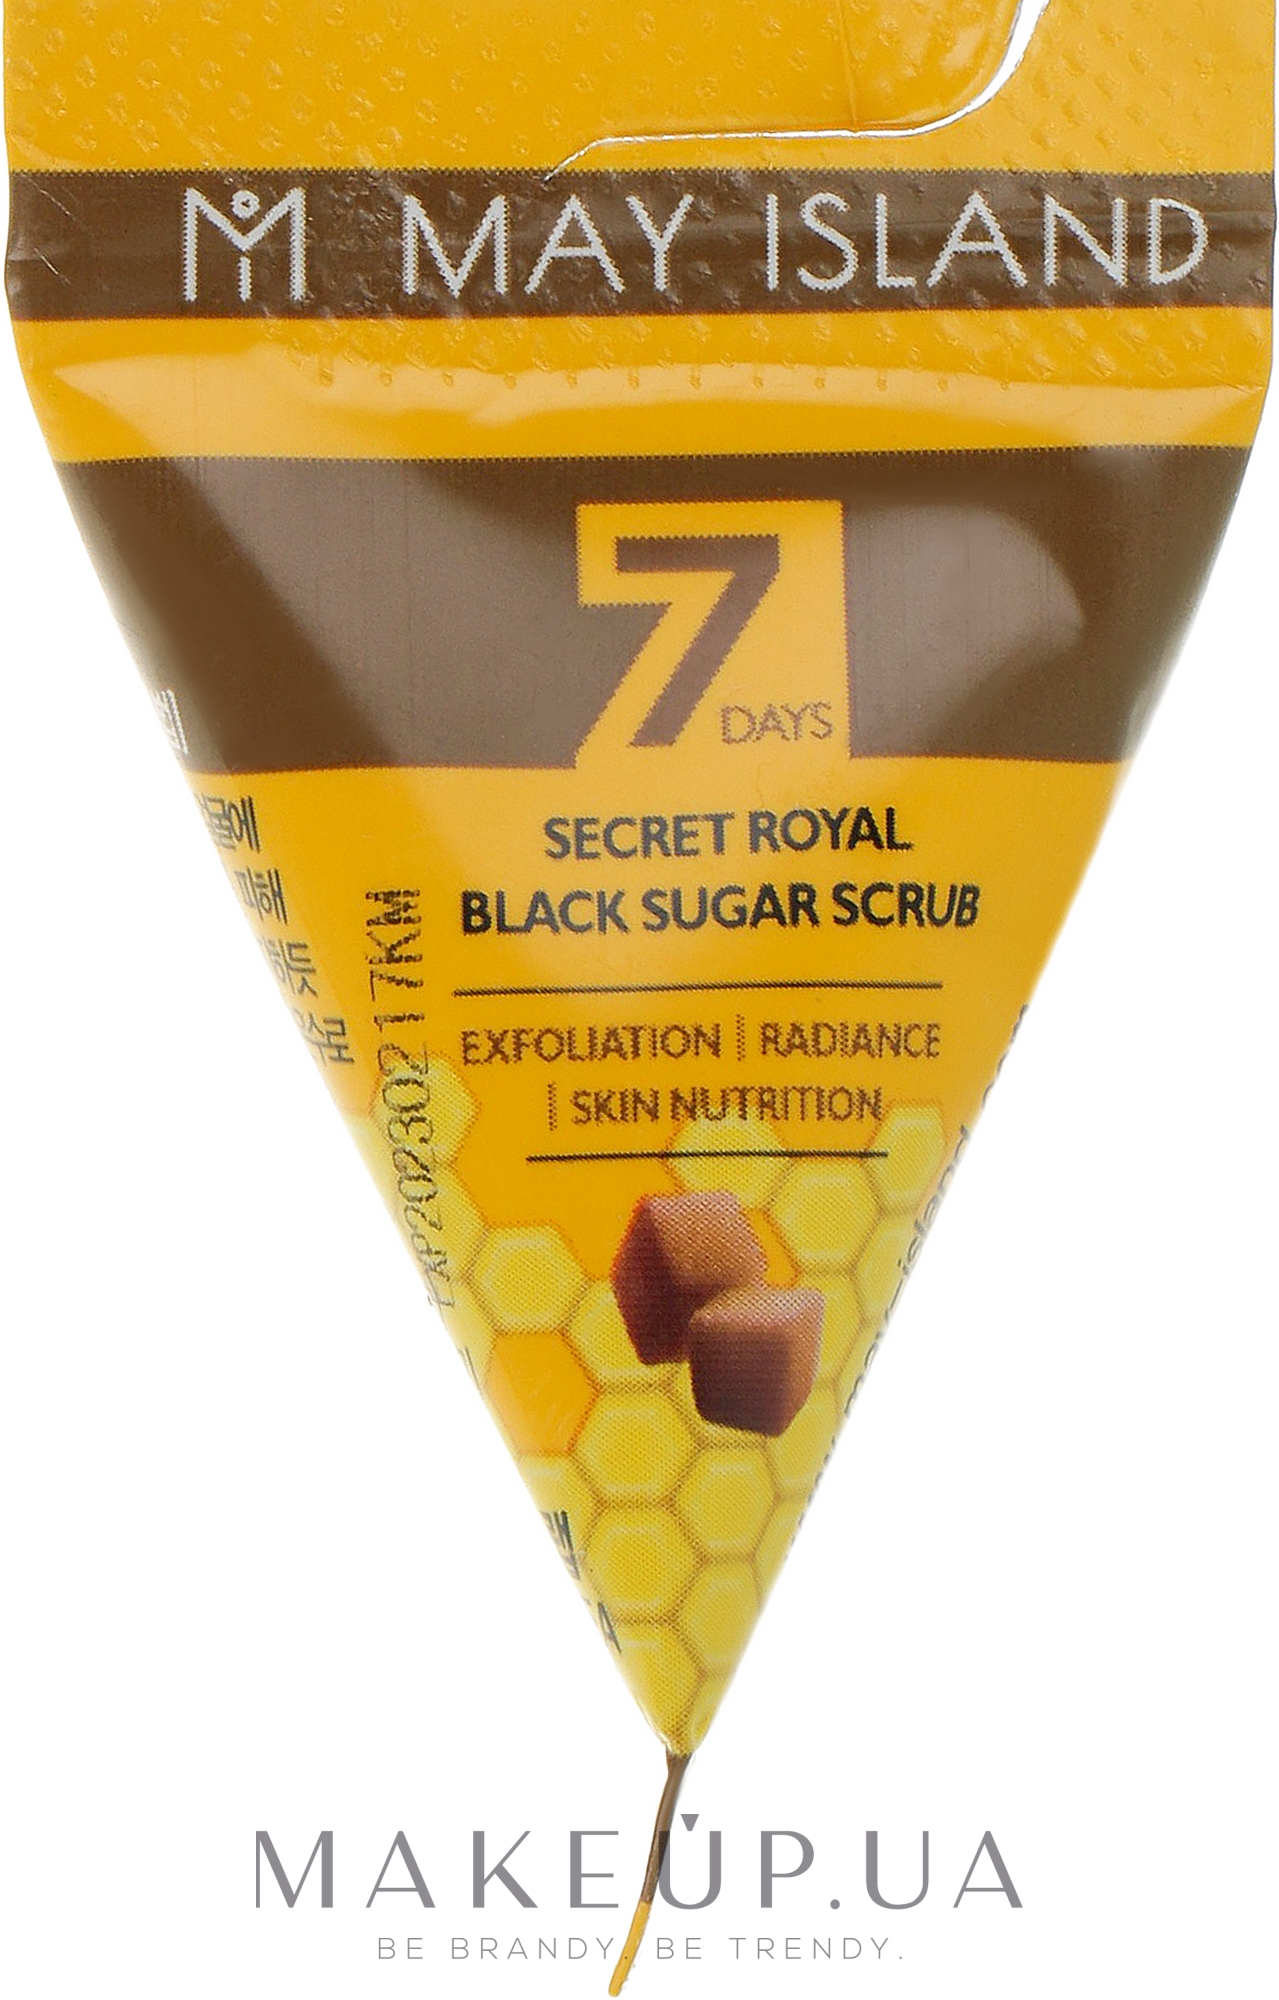 Цукровий скраб для обличчя - May Island 7 Days Secret Royal Black Sugar Scrub — фото 5g